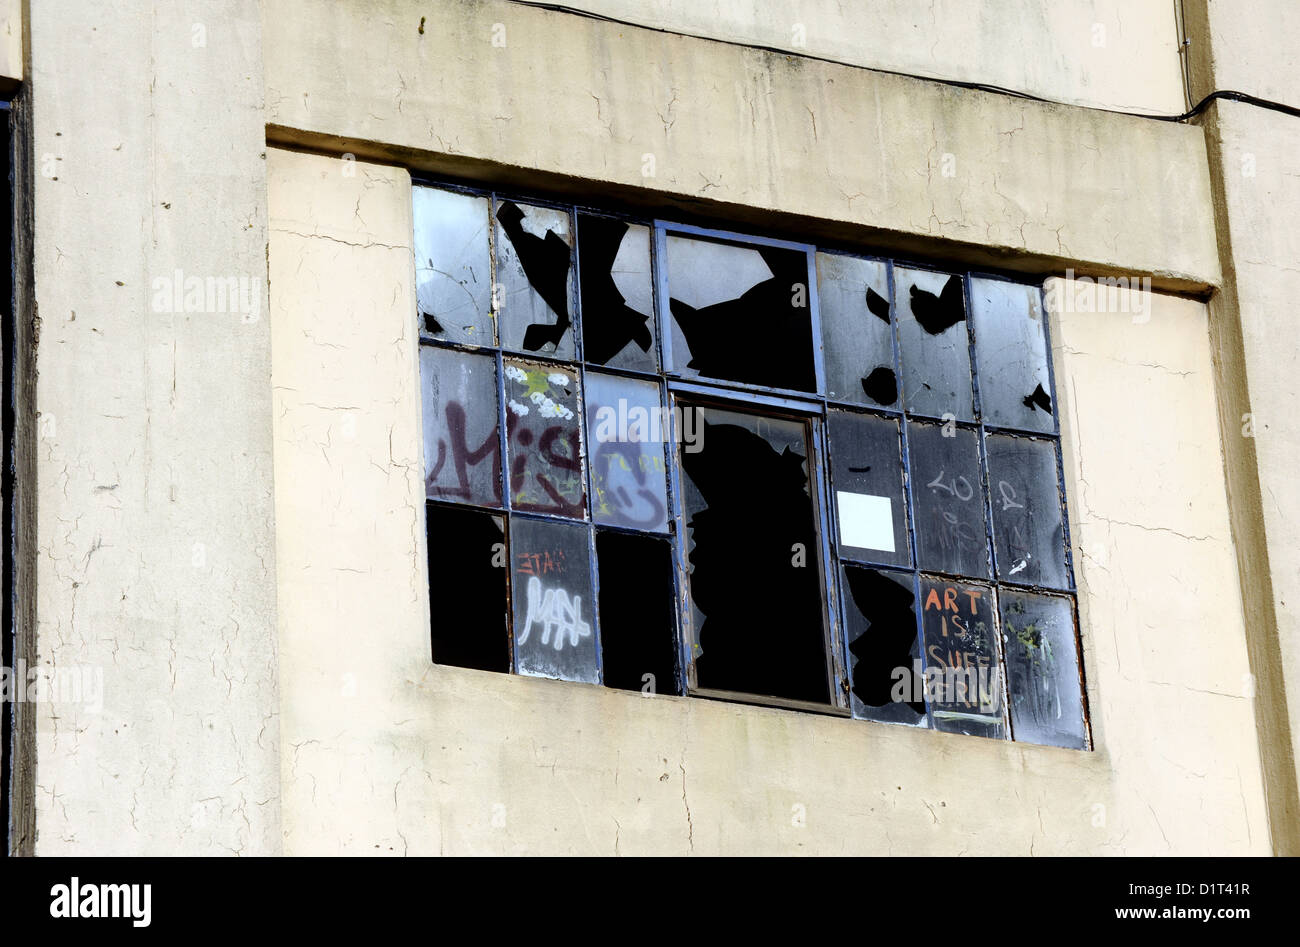 Ipswich UK - fenêtres brisées dans un bâtiment abandonné Banque D'Images